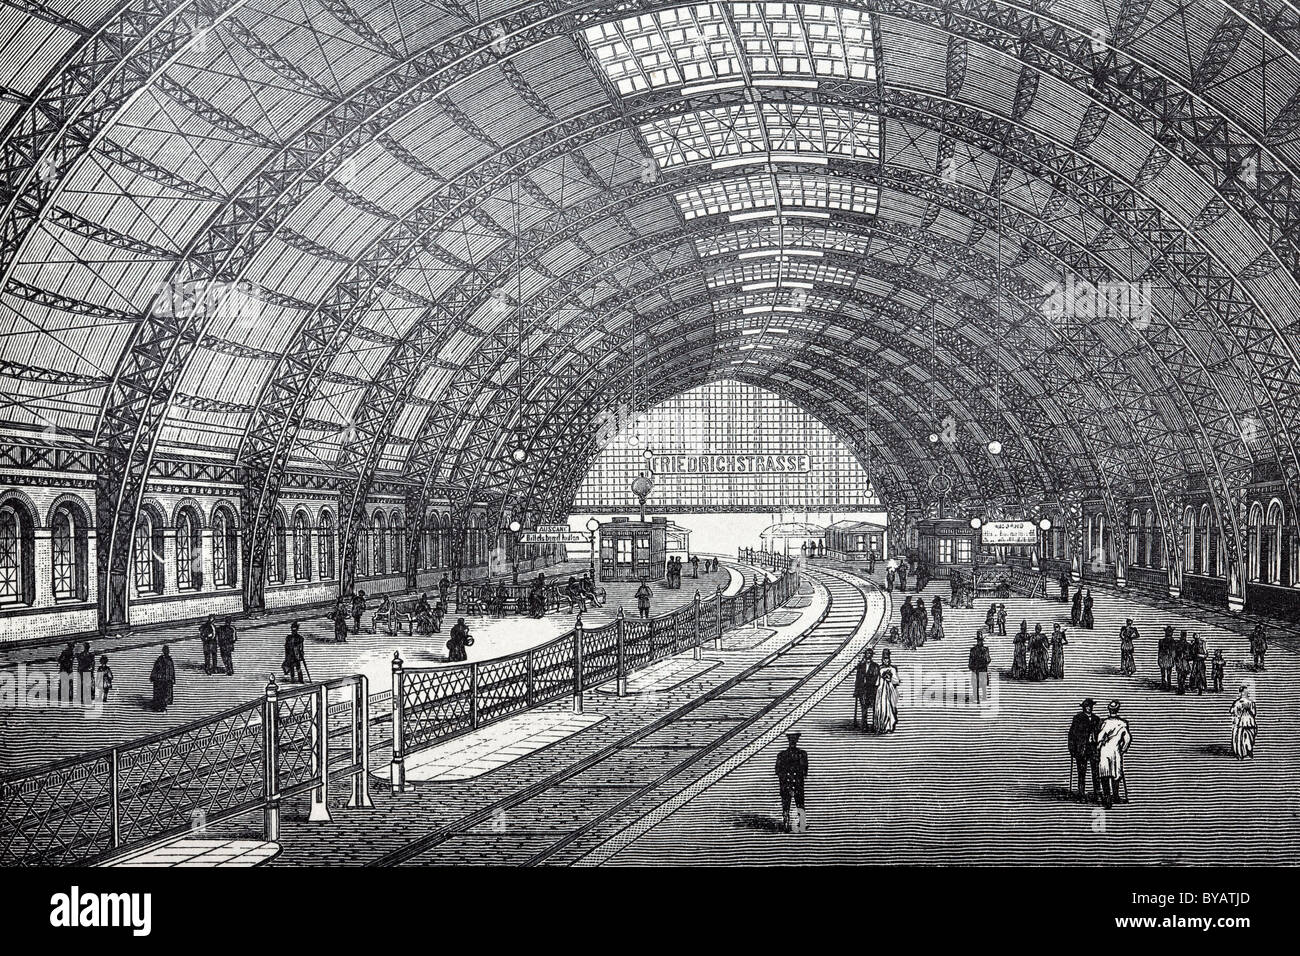 Friedrichstrasse stazione ferroviaria, hall costruzione, Berlino, libro storico illustrazione, incisione in acciaio Foto Stock